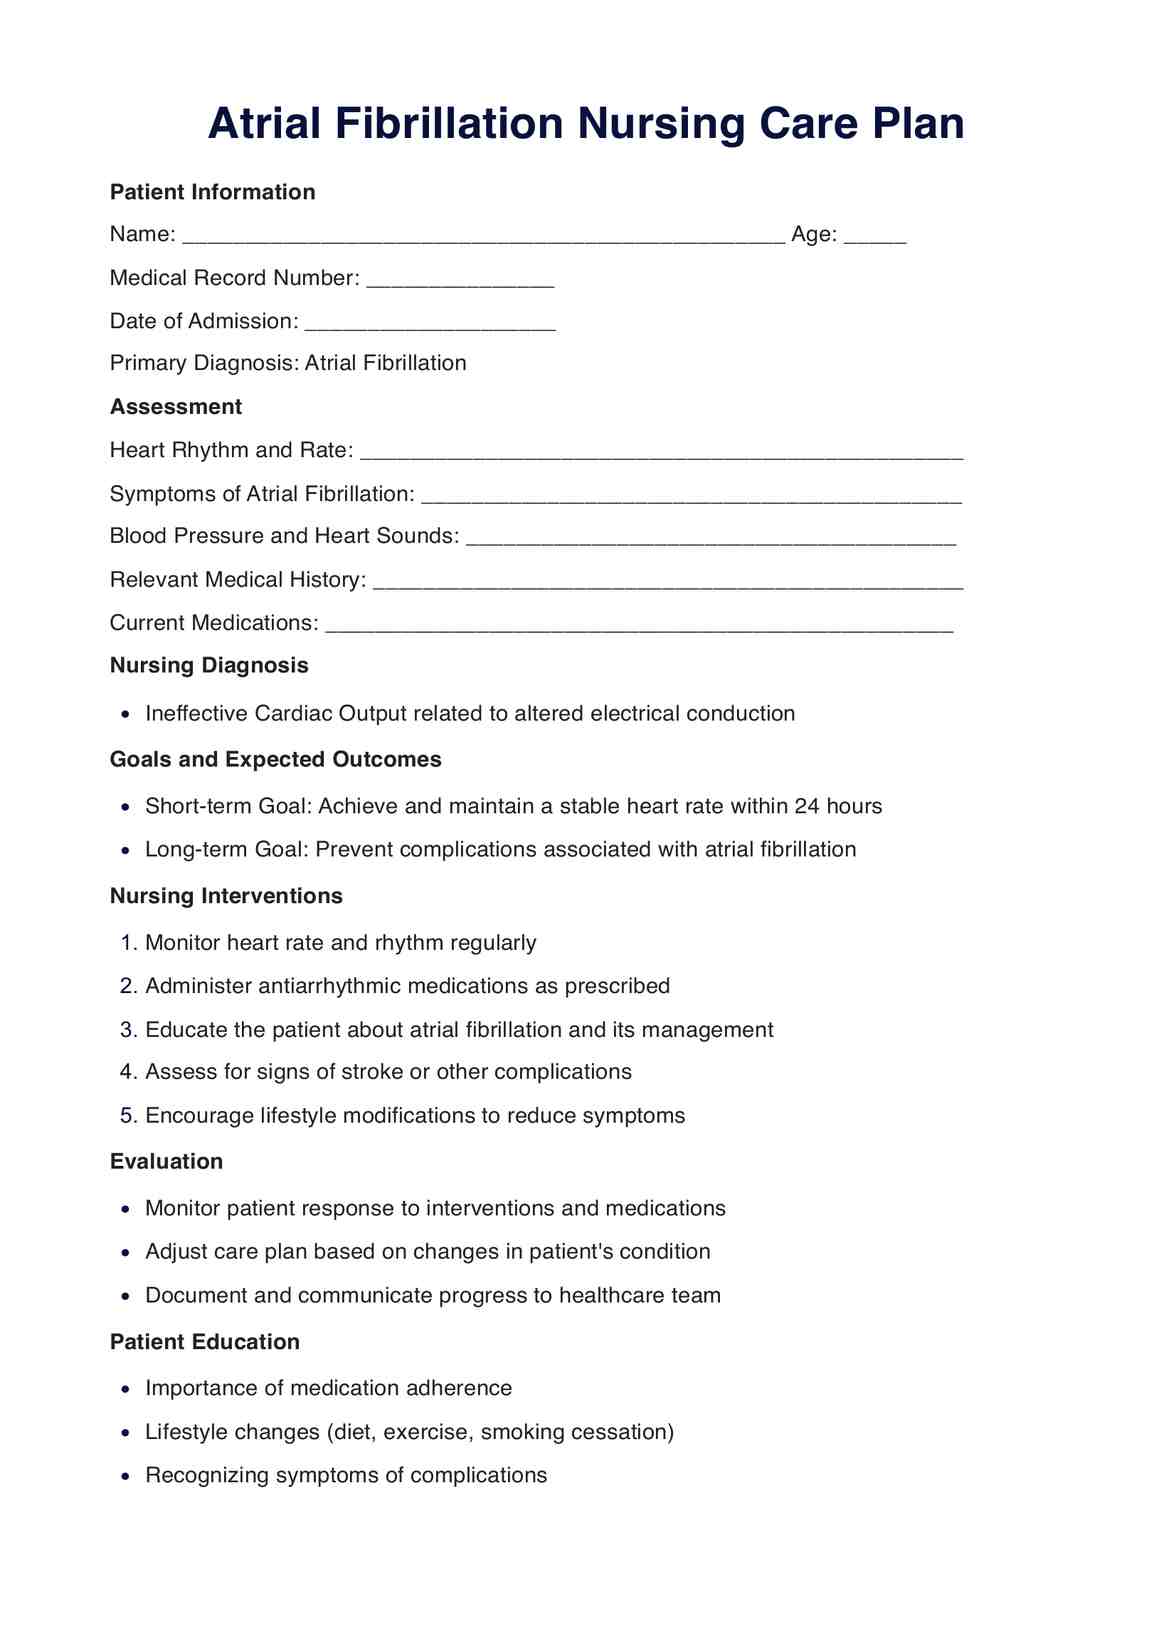 Atrial Fibrillation Nursing Care Plan PDF Example